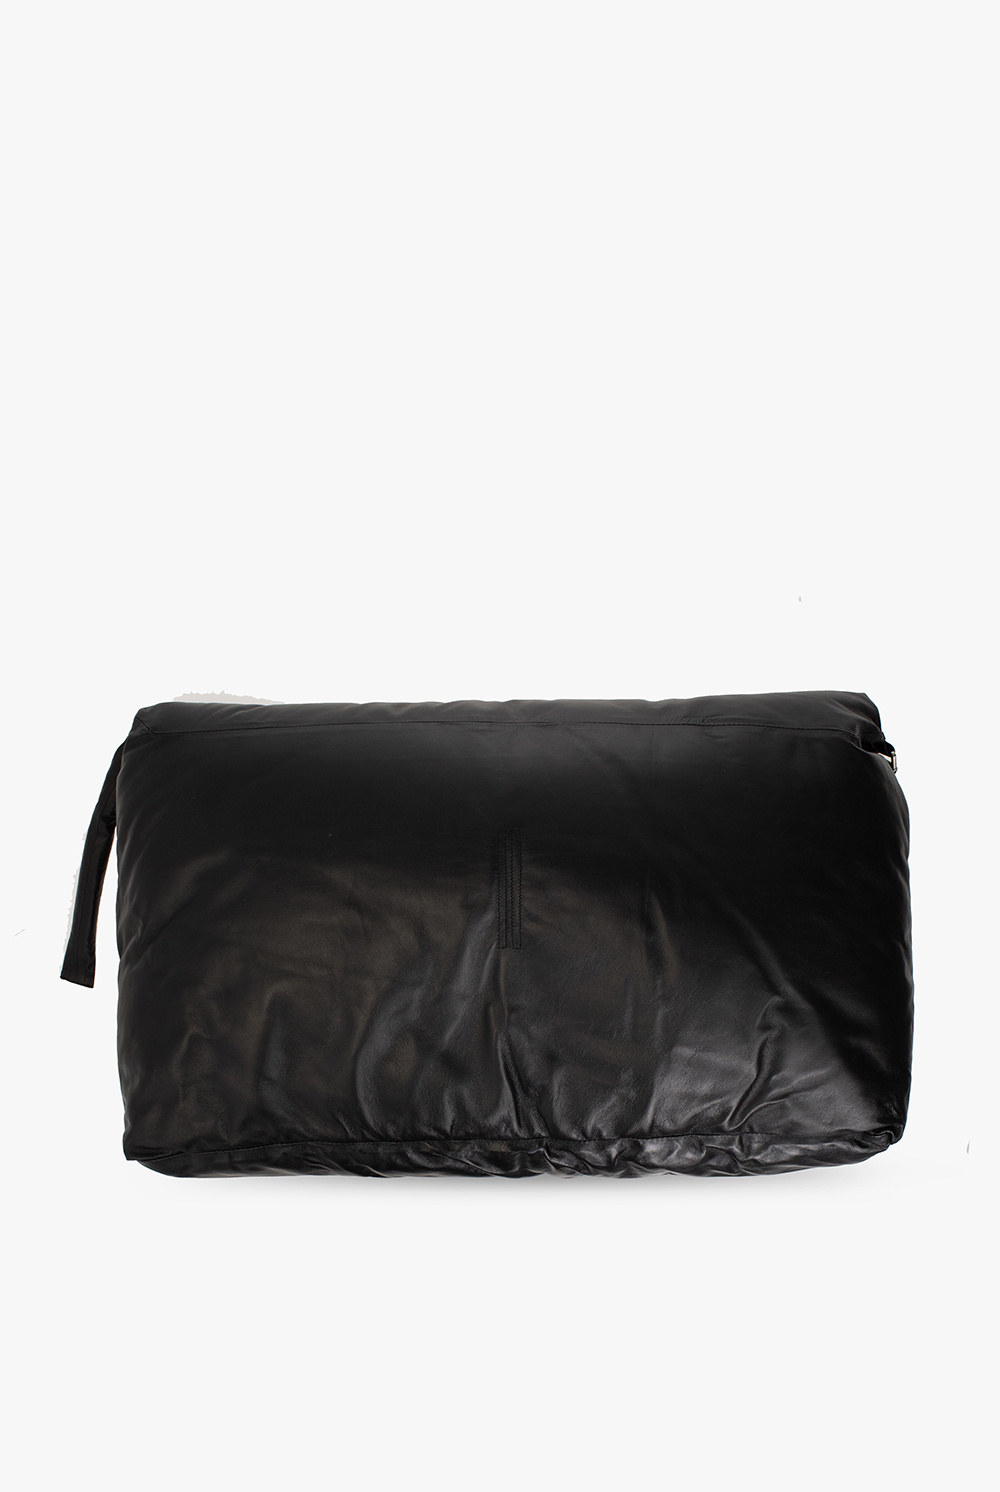 Rick Owens neous orbit chain strap leather shoulder bag item